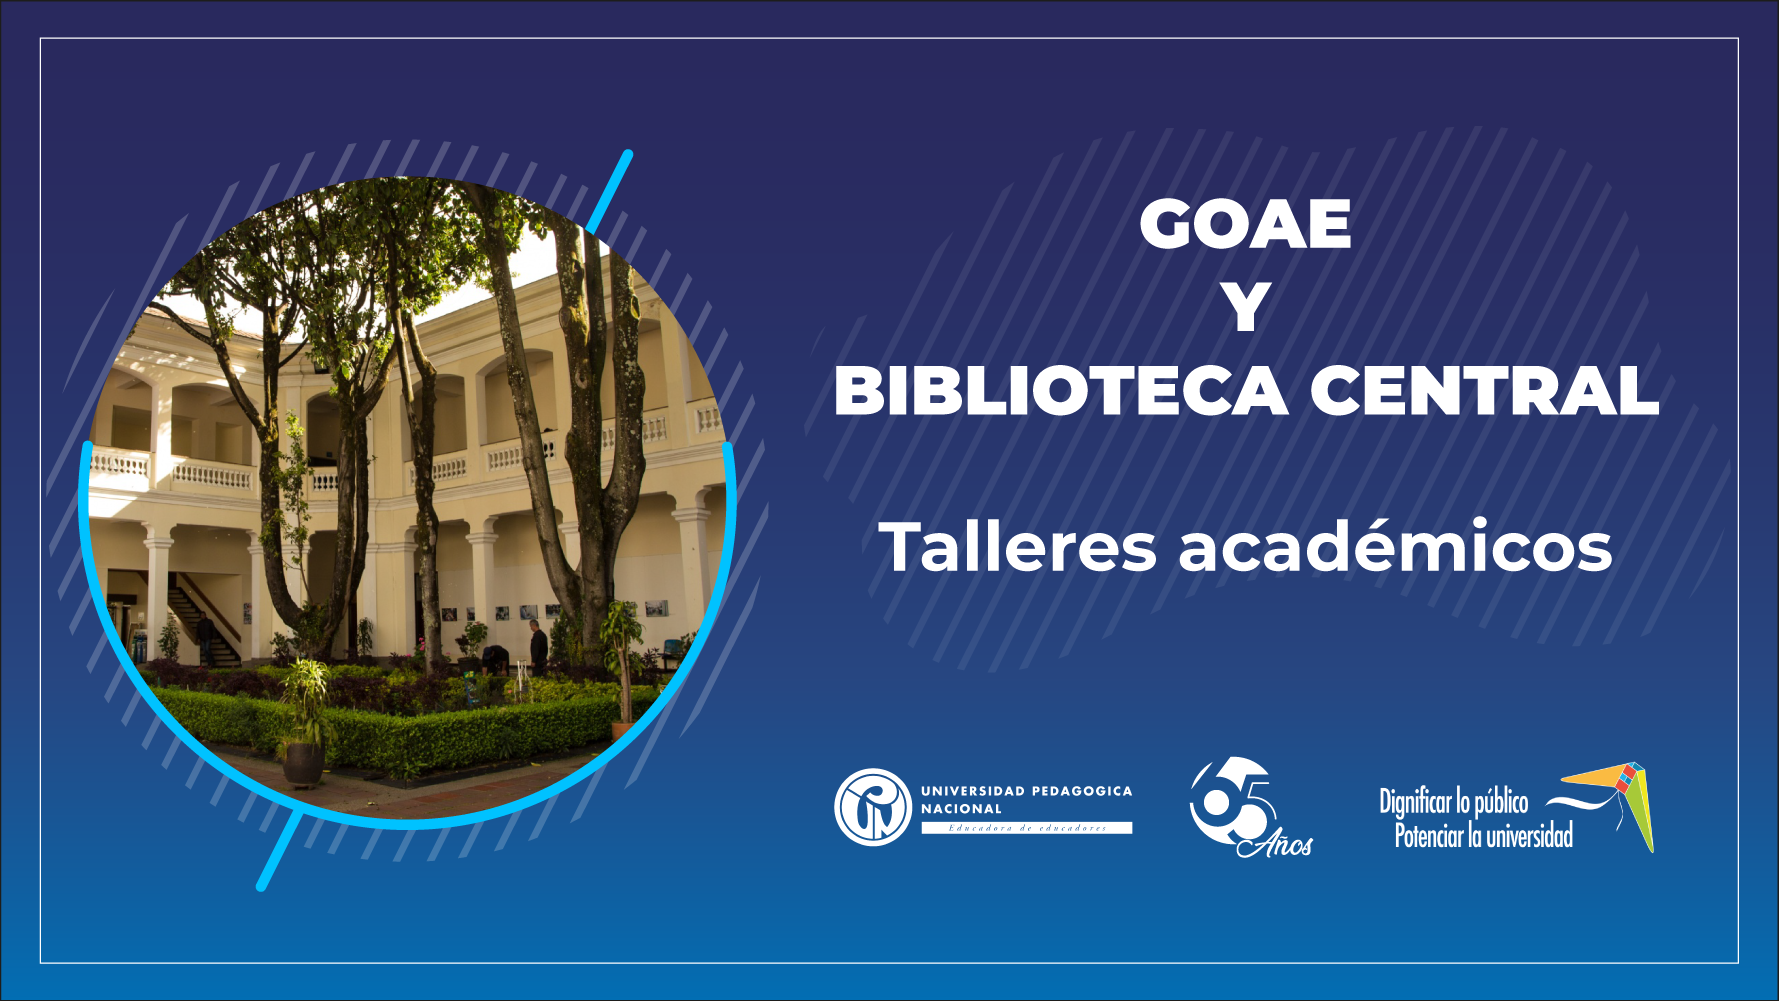 TALLERES ACADÉMICO GOAE Y BIBLIOTECA CENTRAL